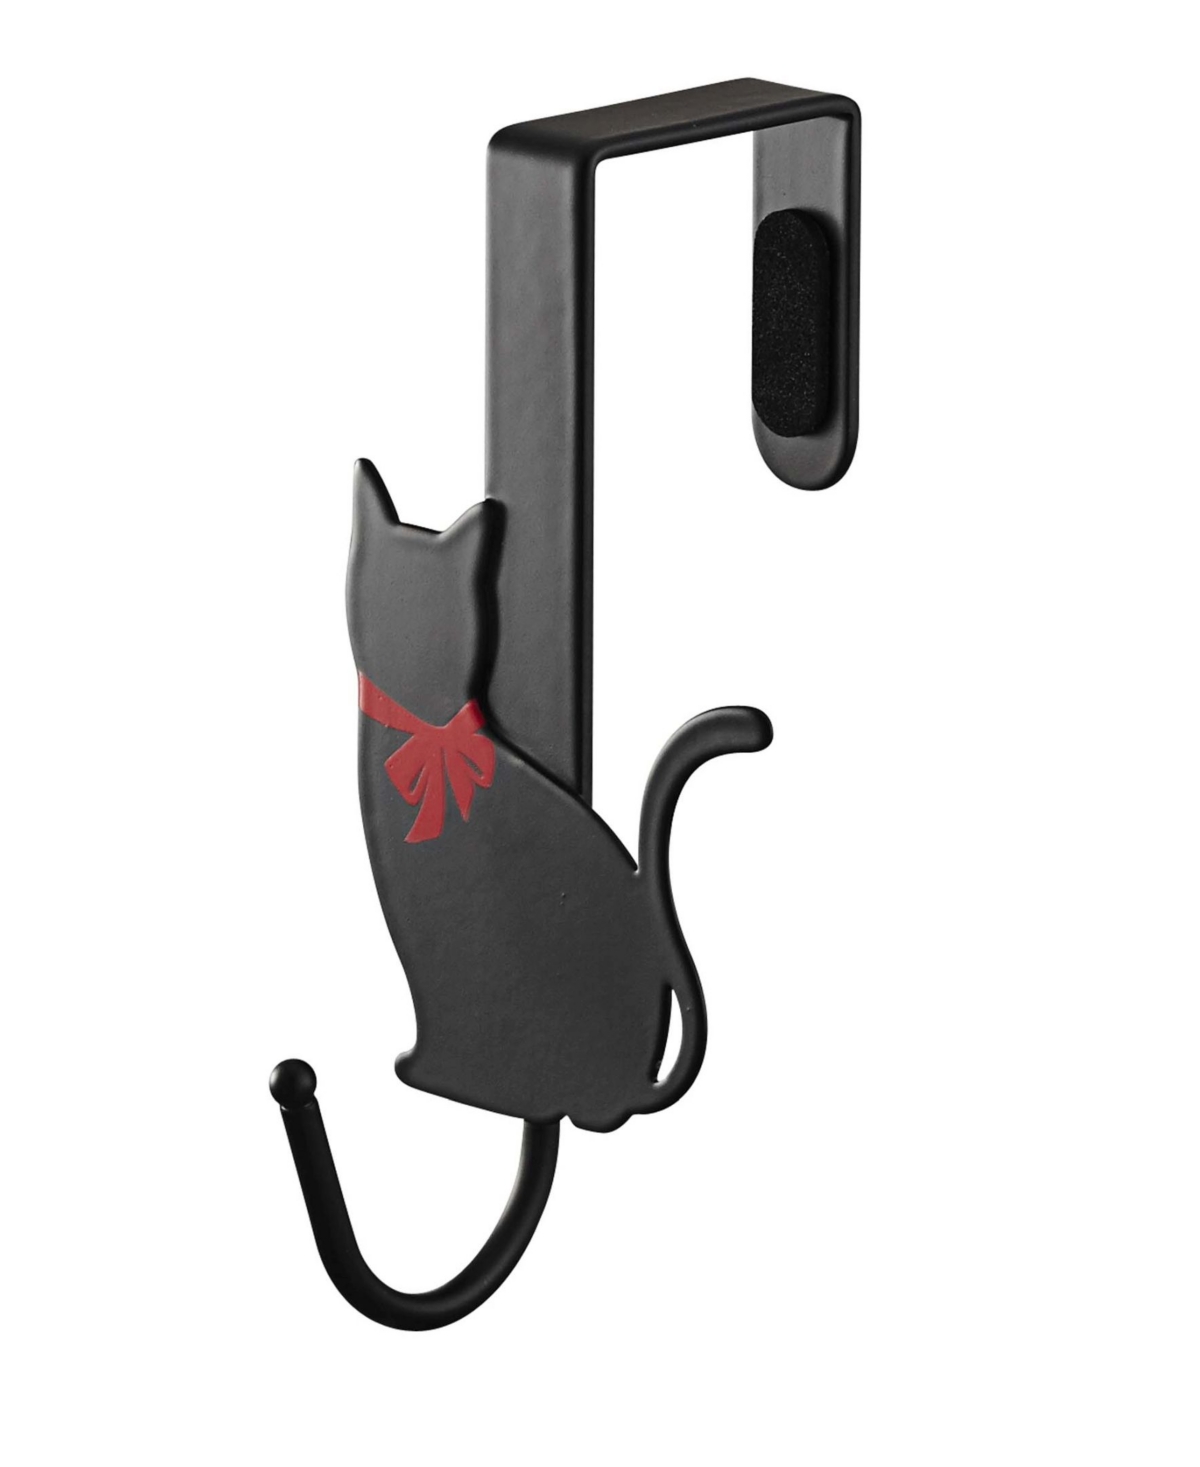 Home Cat Over-The-Door Hook Set of 2 - Black